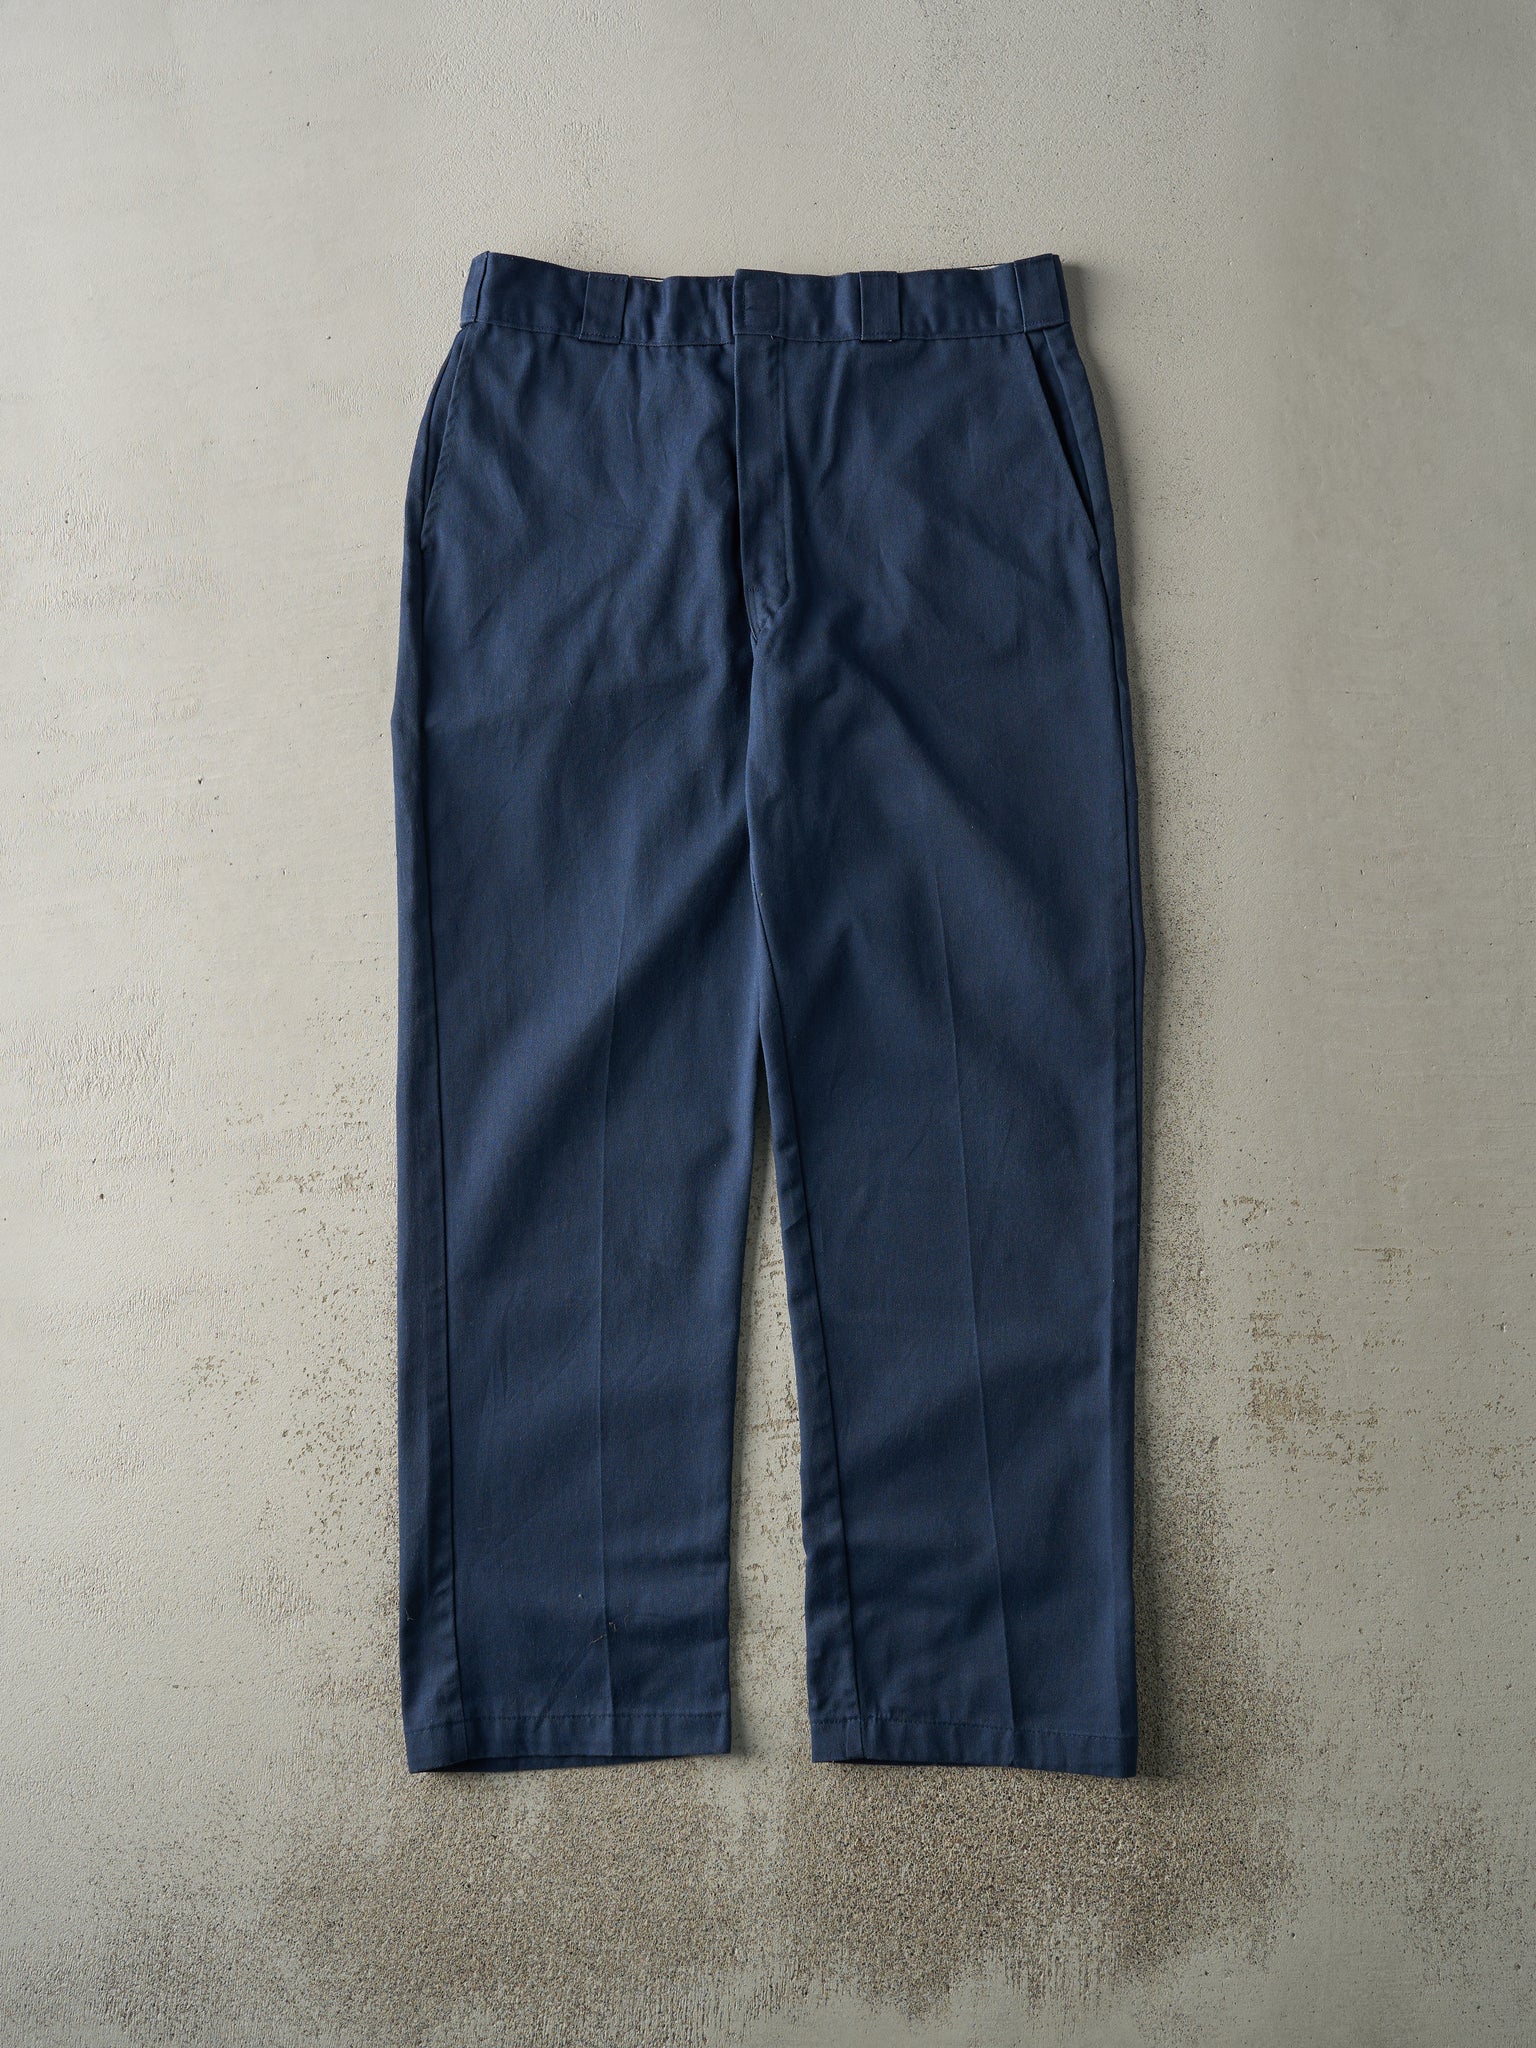 Vintage 90s Navy Blue Dickies Work Pants (34x30.5)